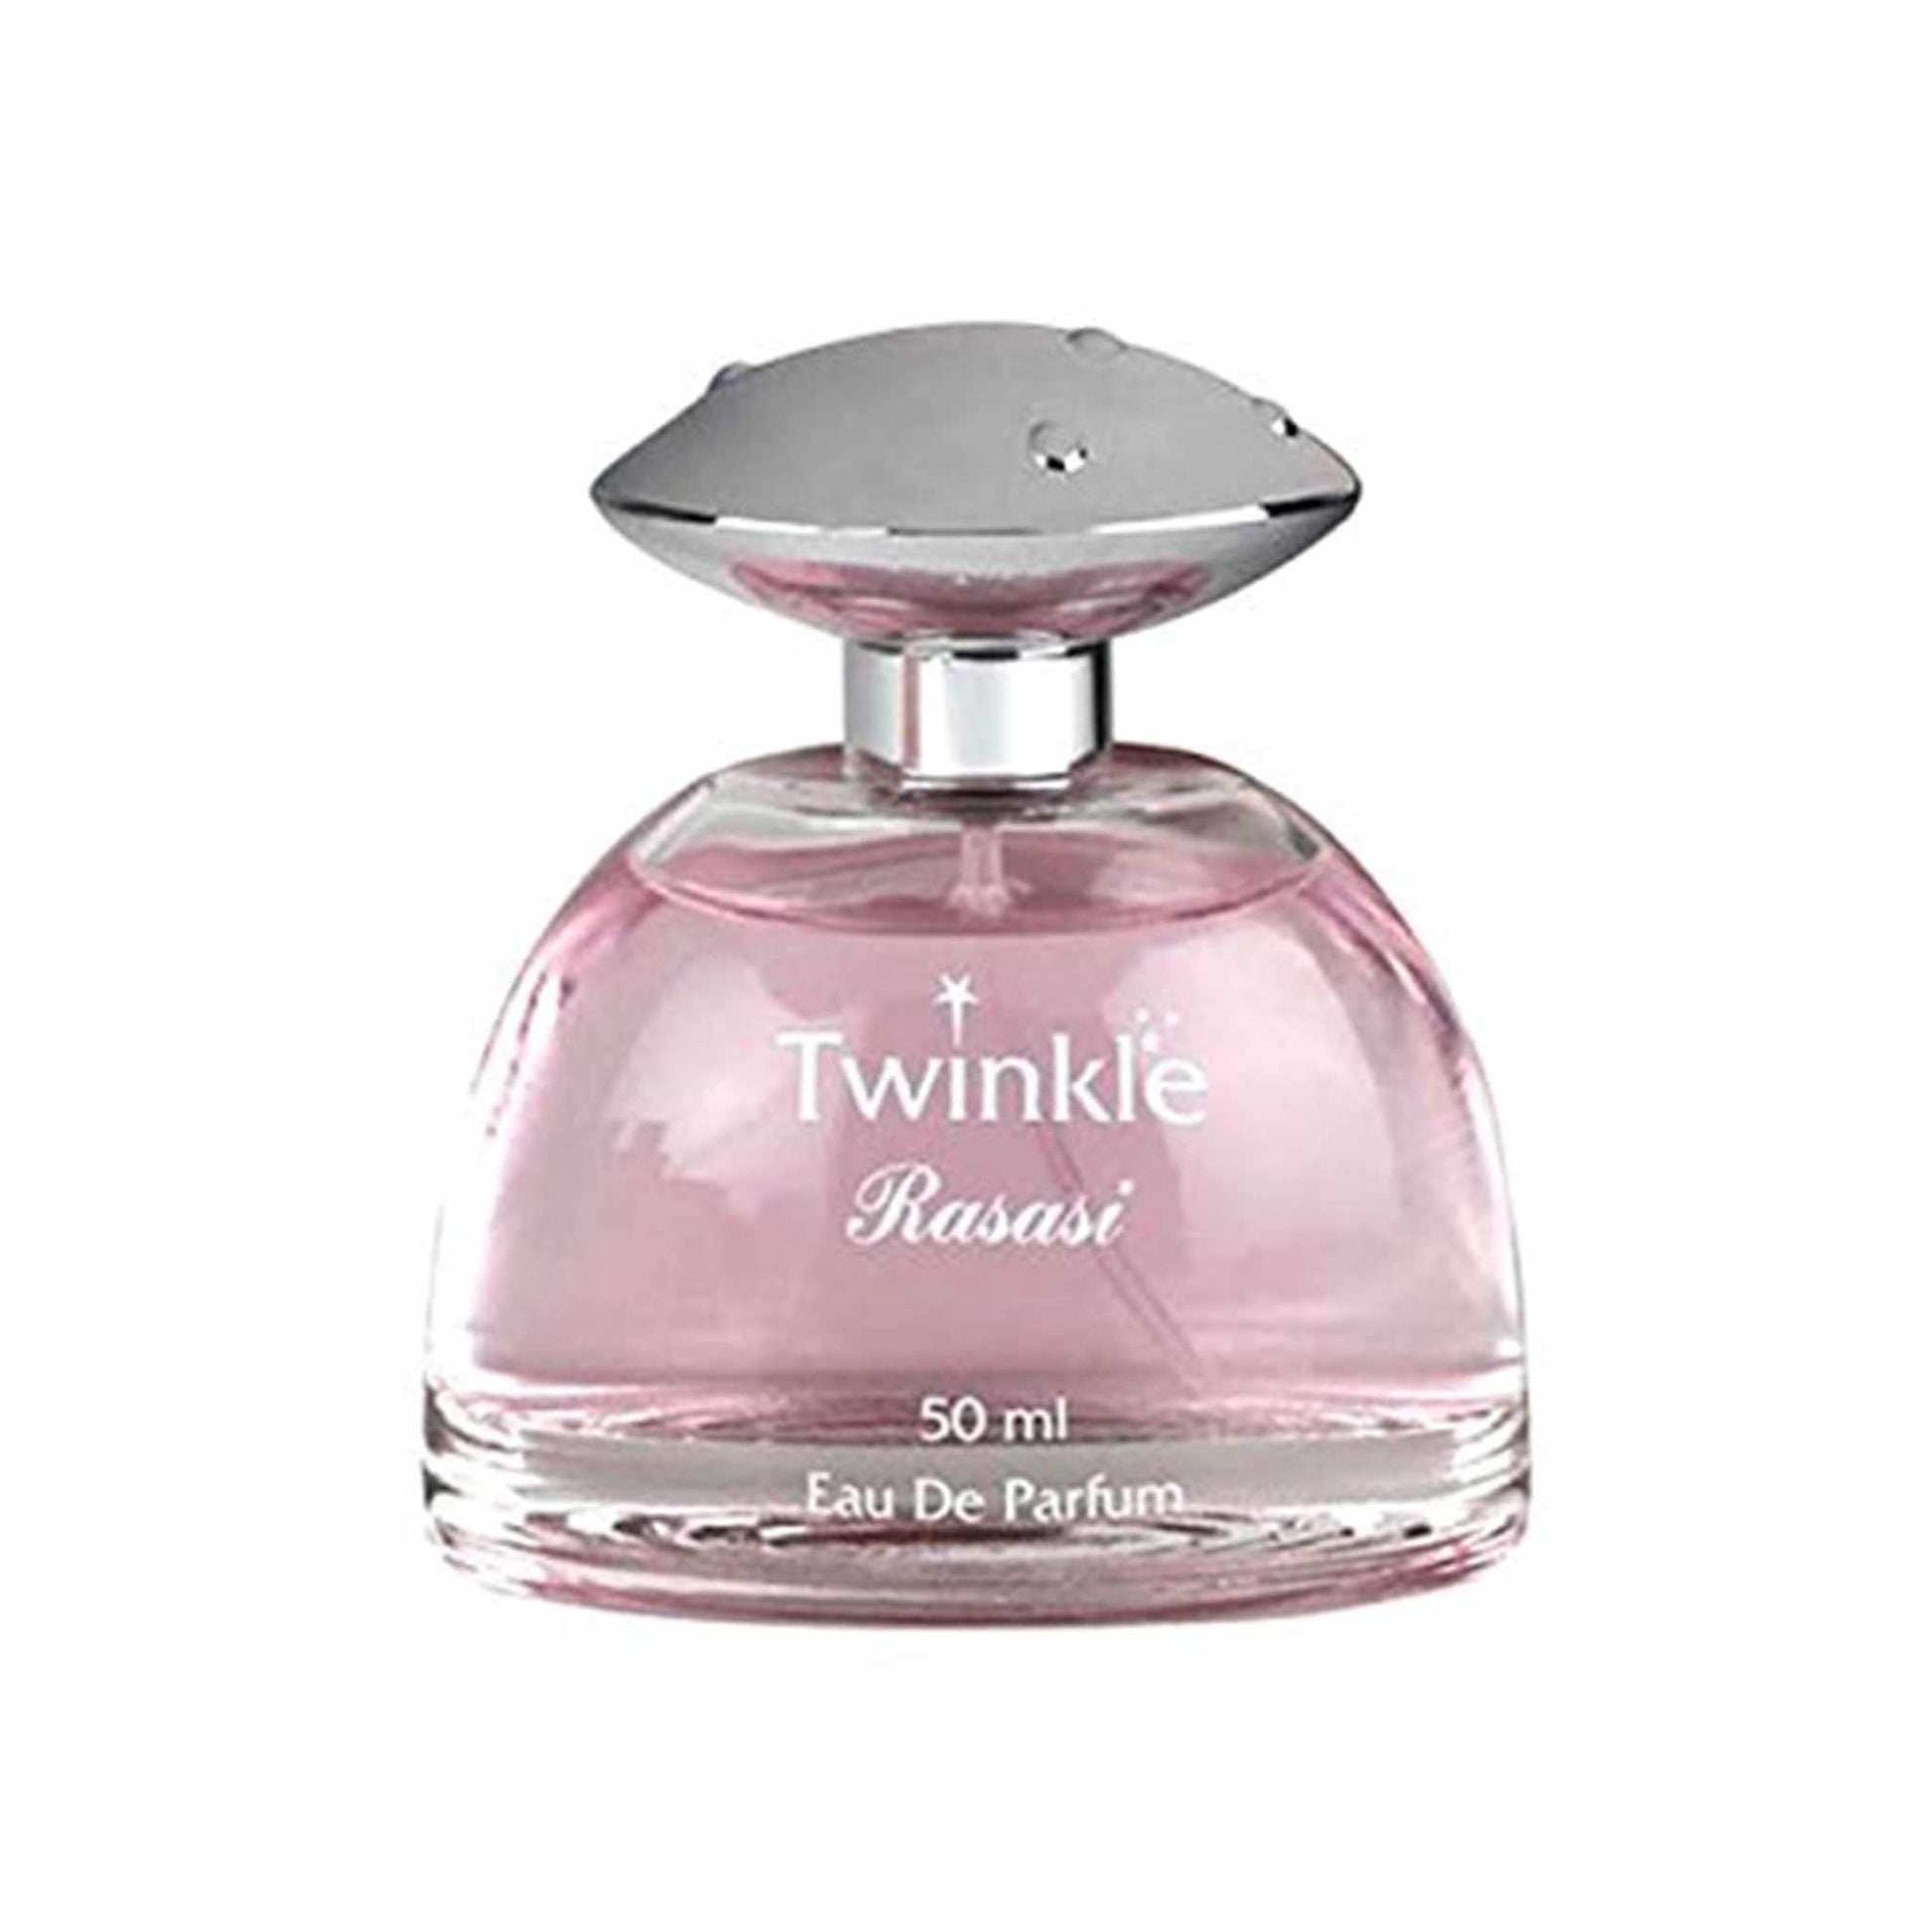 rasasi twinkle perfume for women